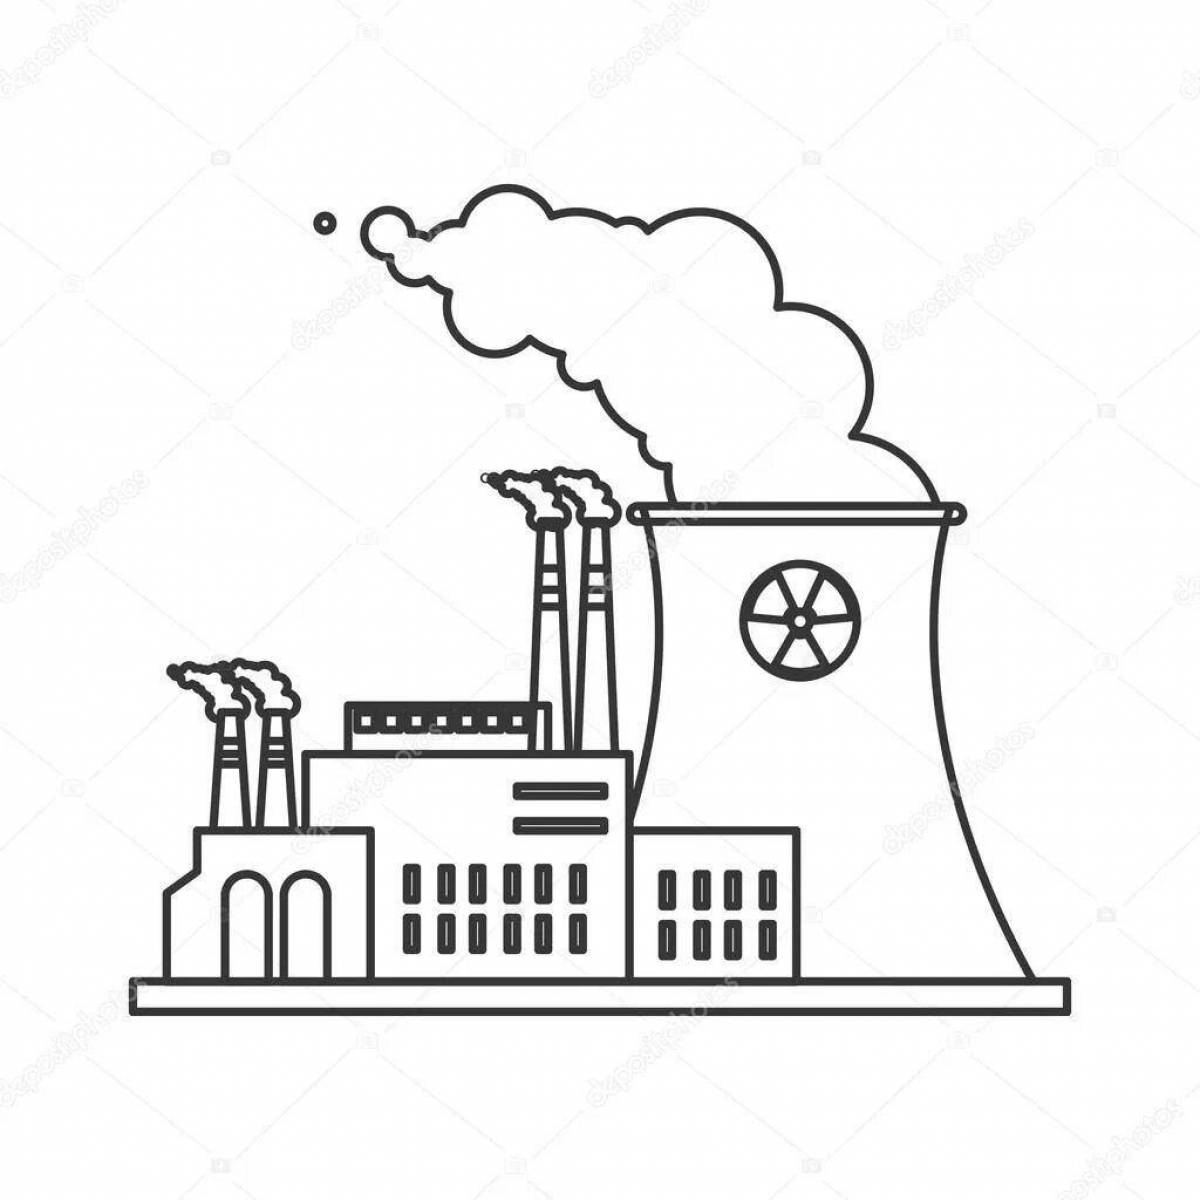 Balanced nuclear power plant